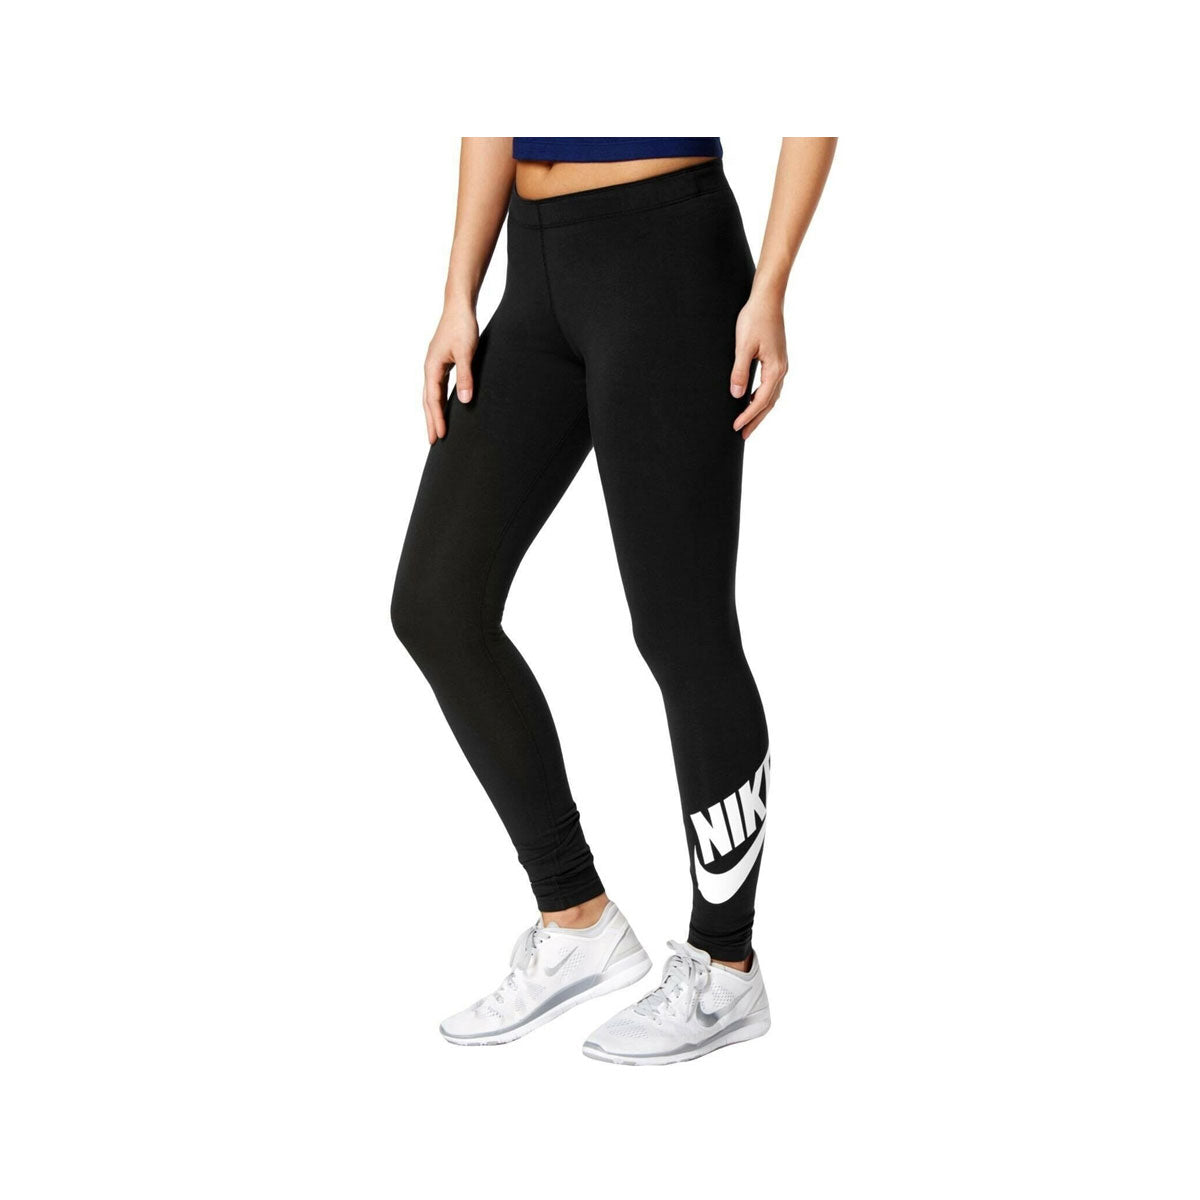 Nike Women's Tight Fit Regular length Ankle Leggings - KickzStore